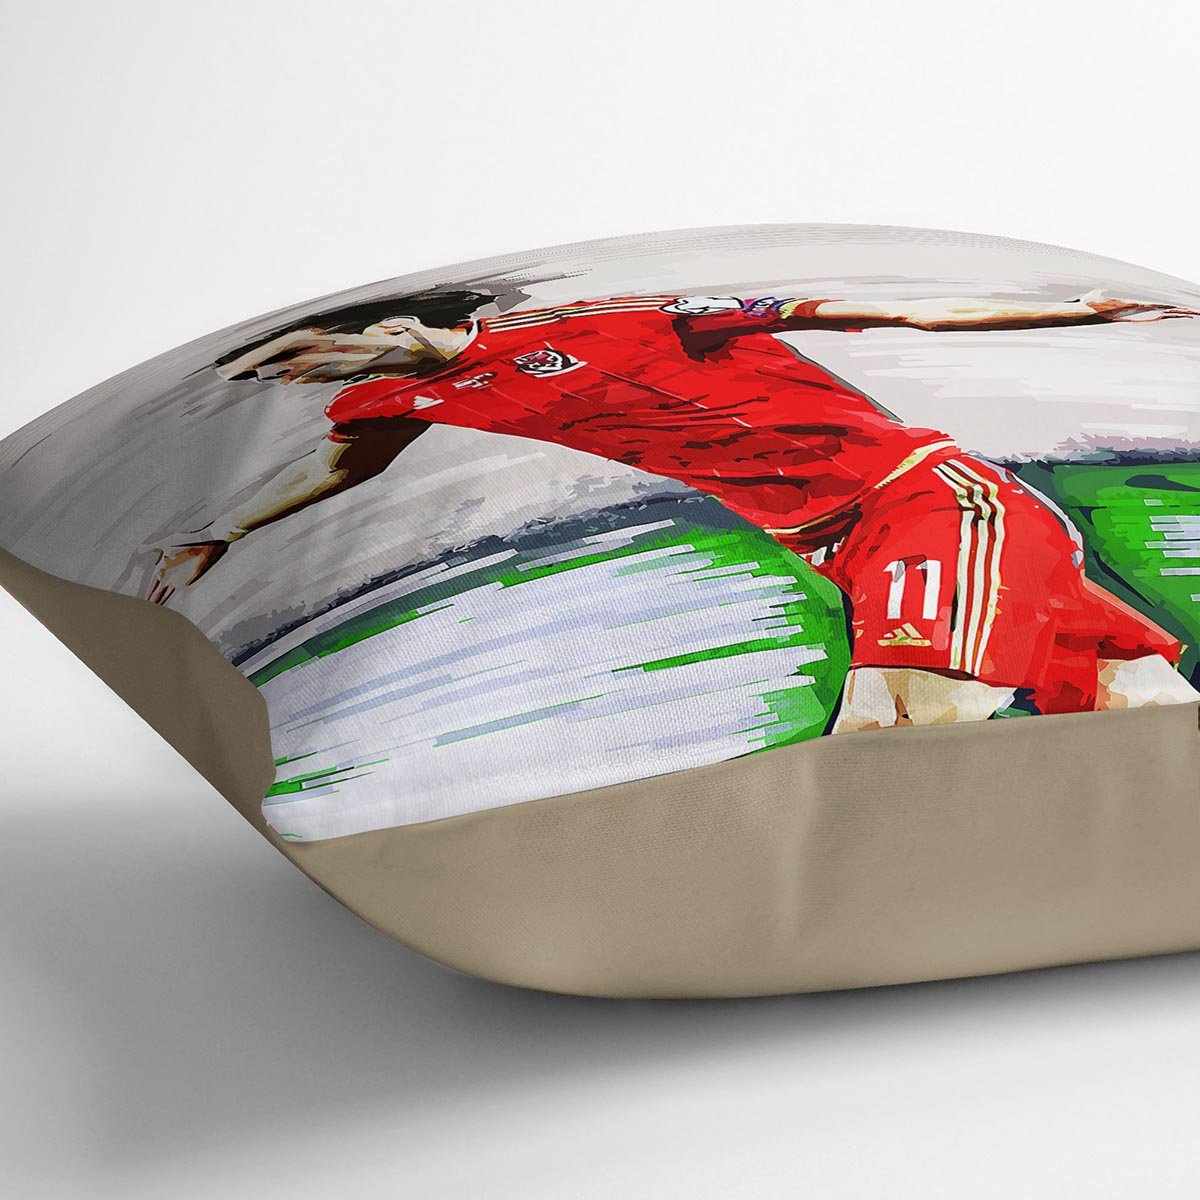 Gareth Bale Cushion